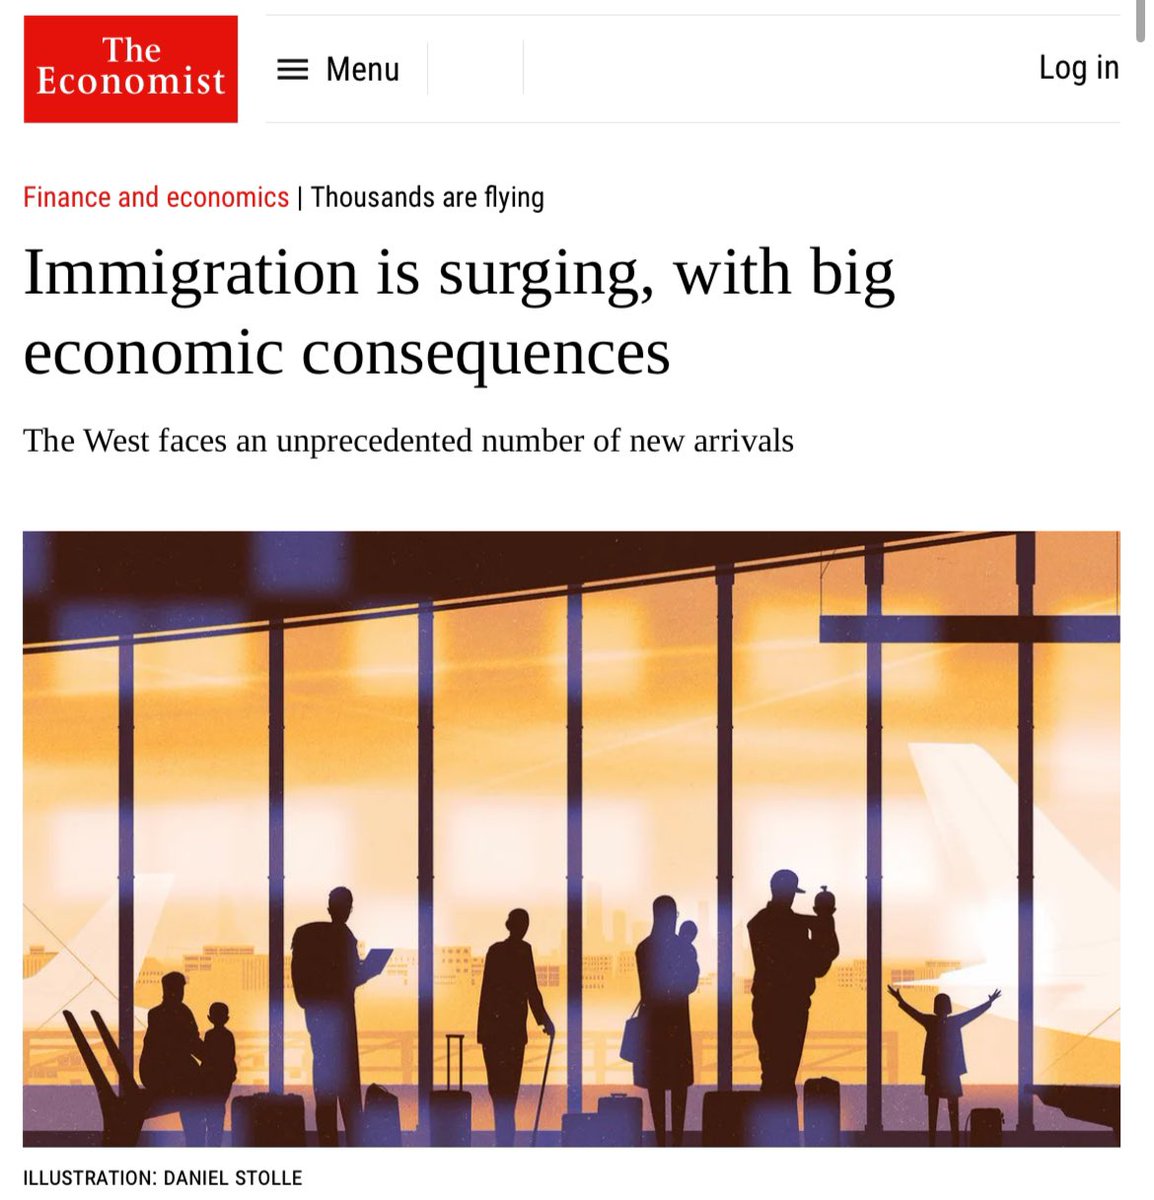 Ein weiterer 'Experte' @wuestpartner @Blickch prognostiziert eine tiefere Zuwanderung. Erinnern Sie sich, wie der Bundesrat vor 25 Jahren von 8'000 bis max. 10'000 Personen pro Jahr sprach? Und wie @StatSchweiz die Zuwanderung konstant unterschätzt? @TheEconomist sieht klarer...